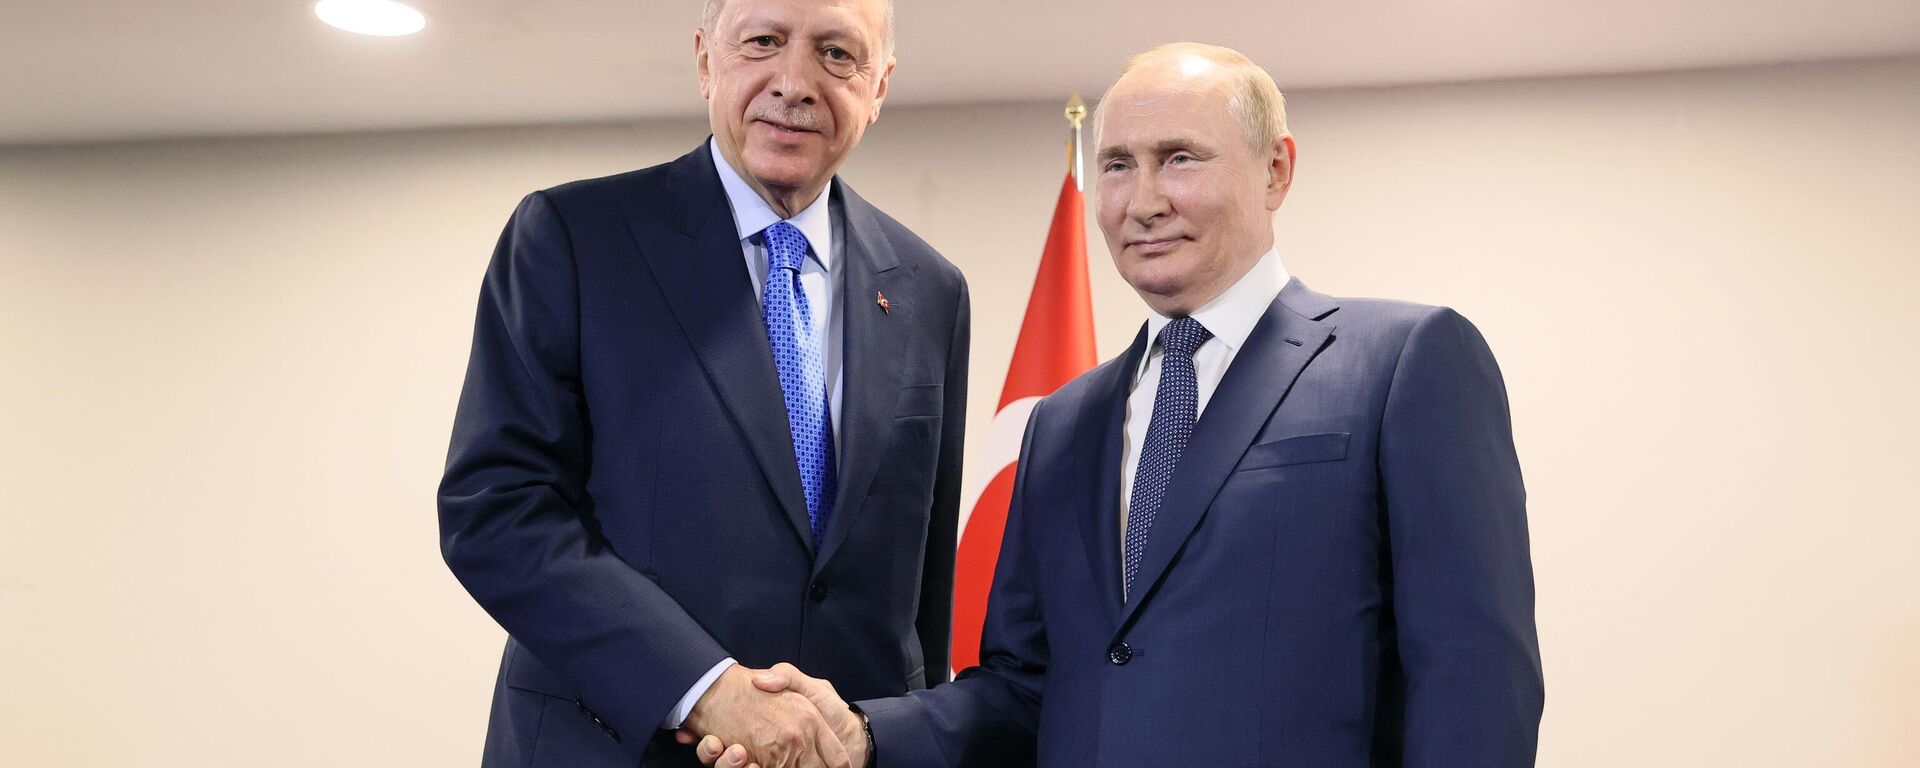 O presidente russo Vladimir Putin e o presidente turco Recep Tayyip Erdogan apertam as mãos antes de sua reunião em Teerã, Irã, 19 de julho de 2022 - Sputnik Brasil, 1920, 19.07.2022